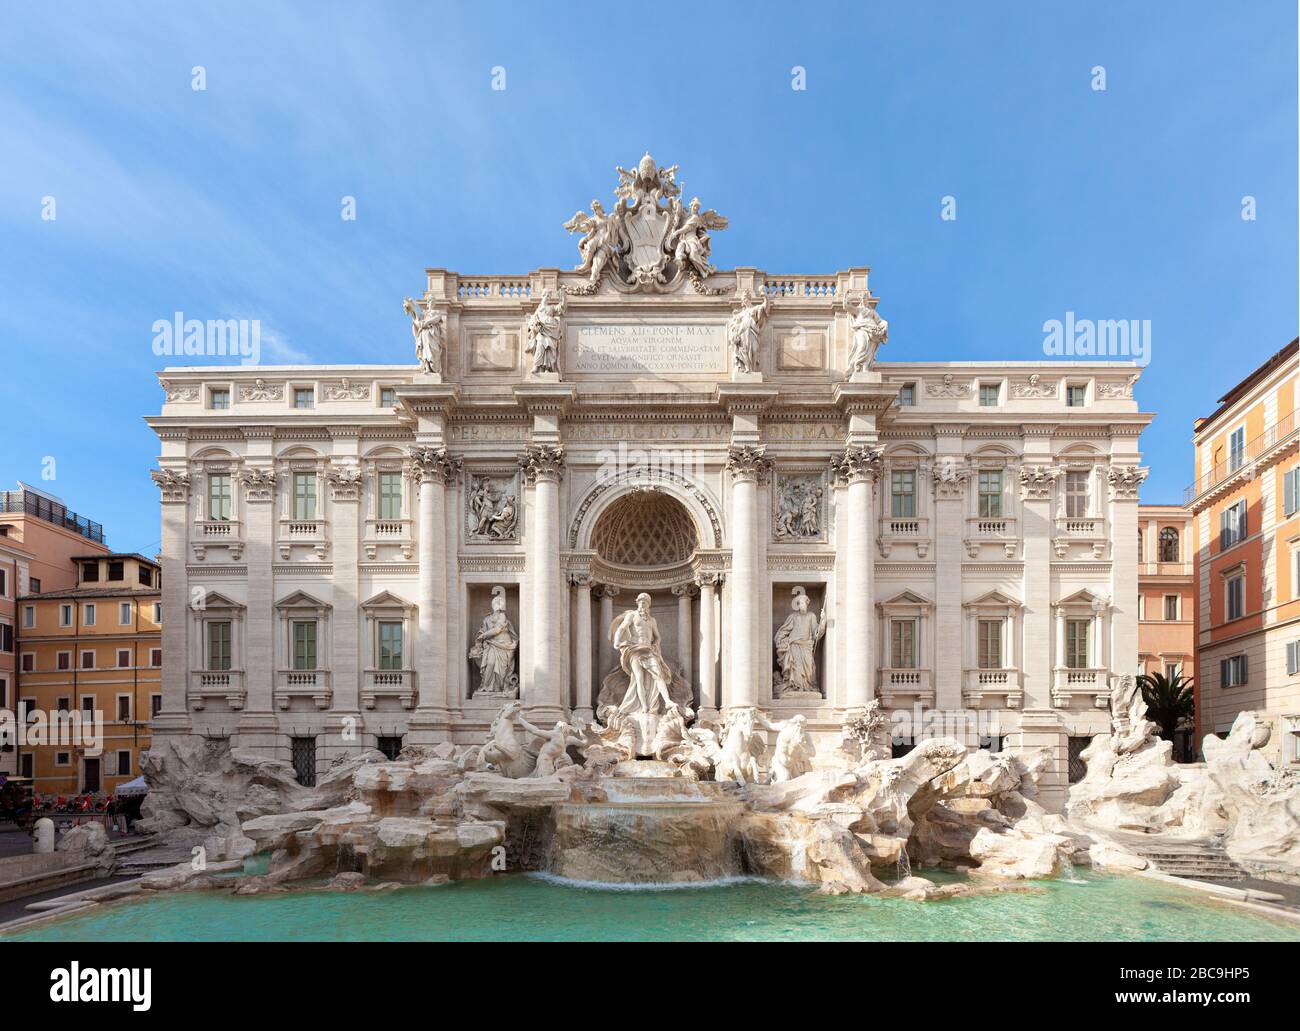 Fontaine de Trévi (Fontana di Trevi). Vue sur la fontaine du quartier de Trevi à Rome, Italie. Pas de gens Banque D'Images